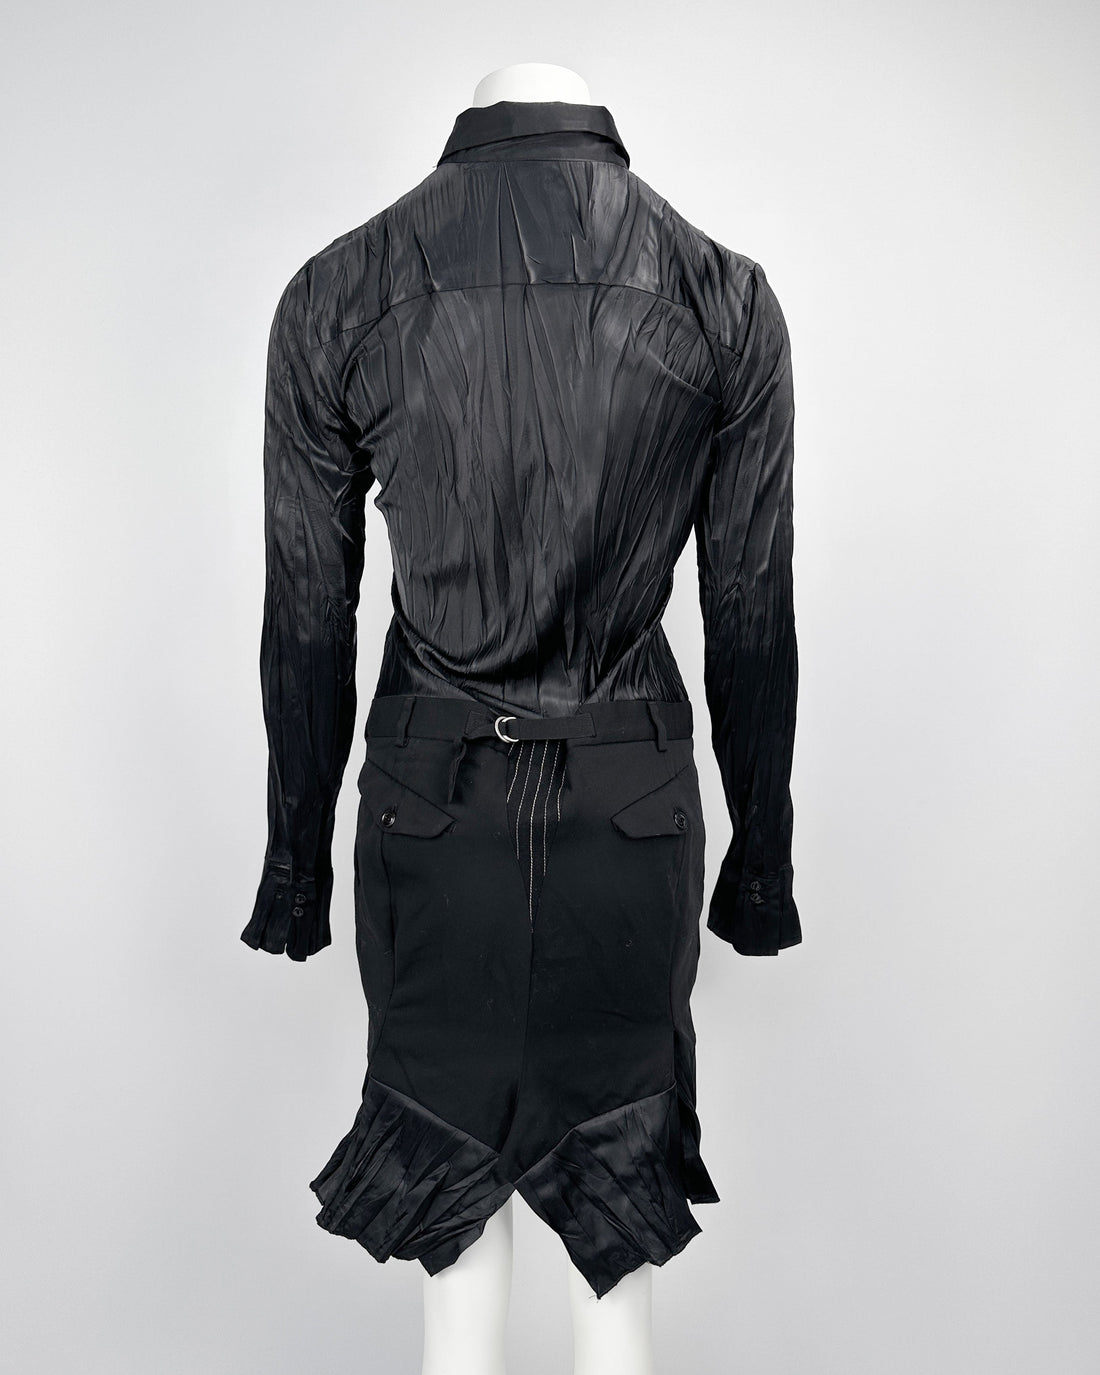 Marithé Francois Girbaud Pleated Black Dress 2000's